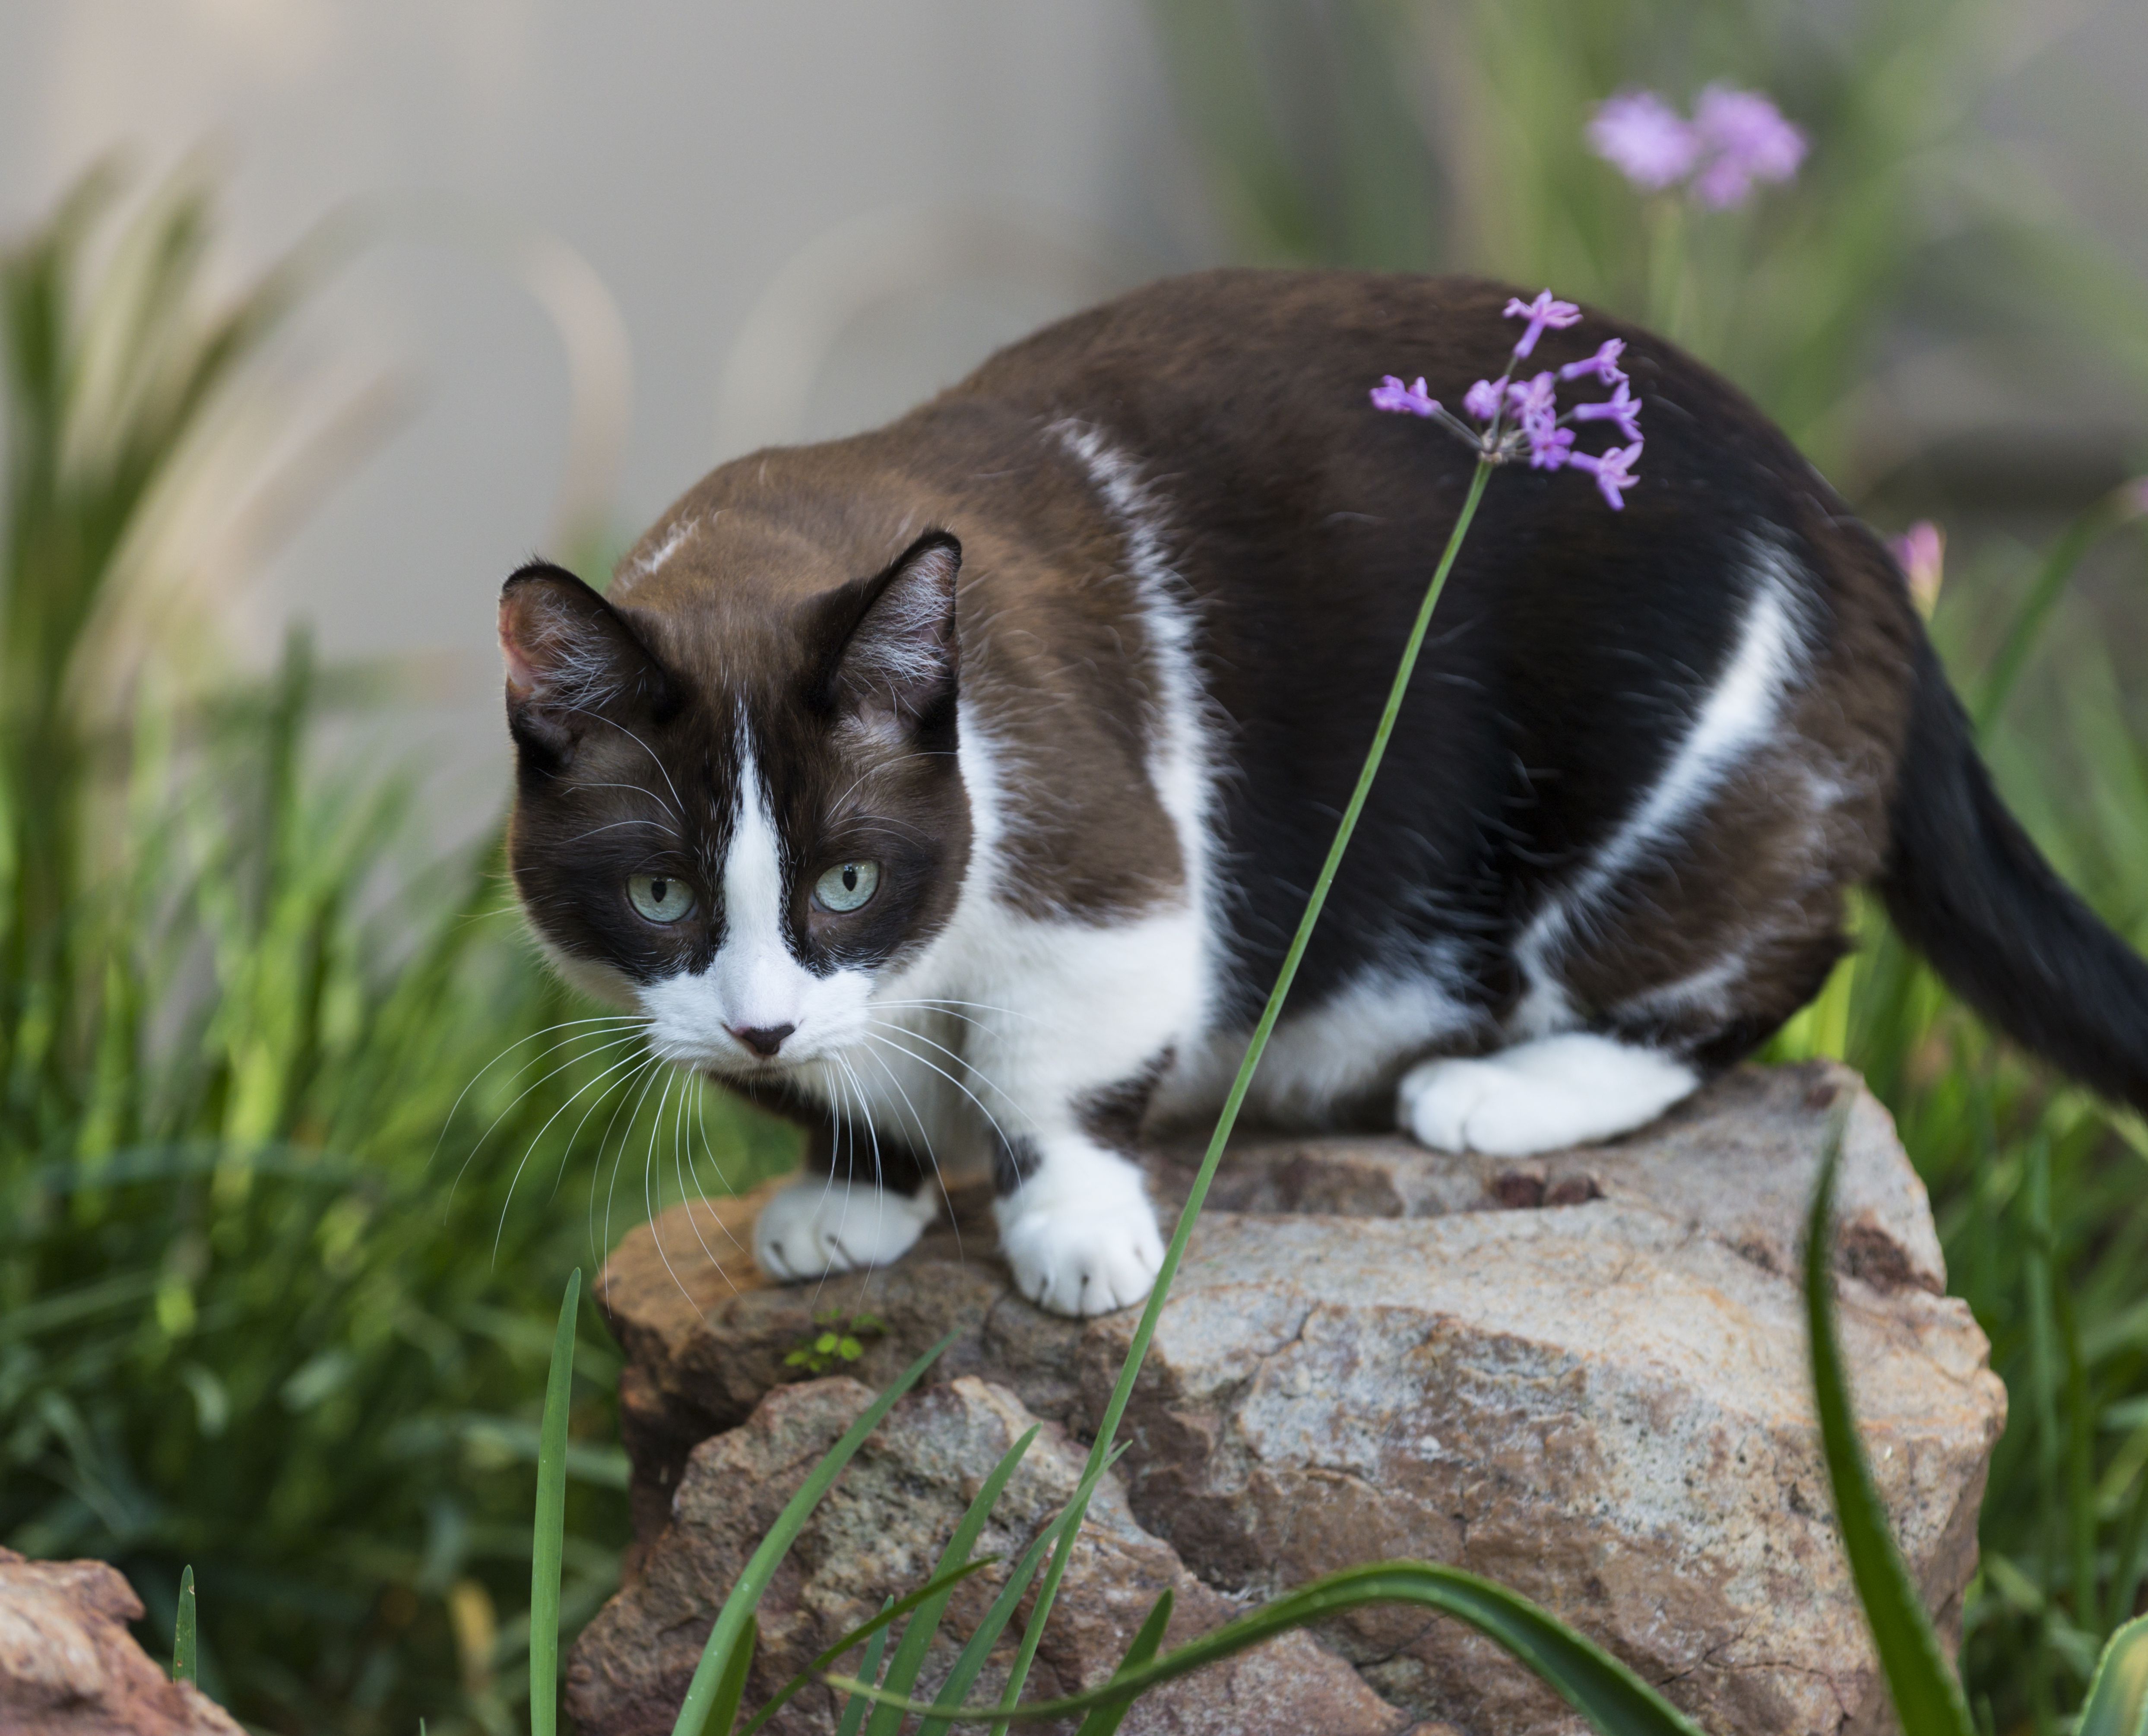 Munchkin cat relaxing in the garden